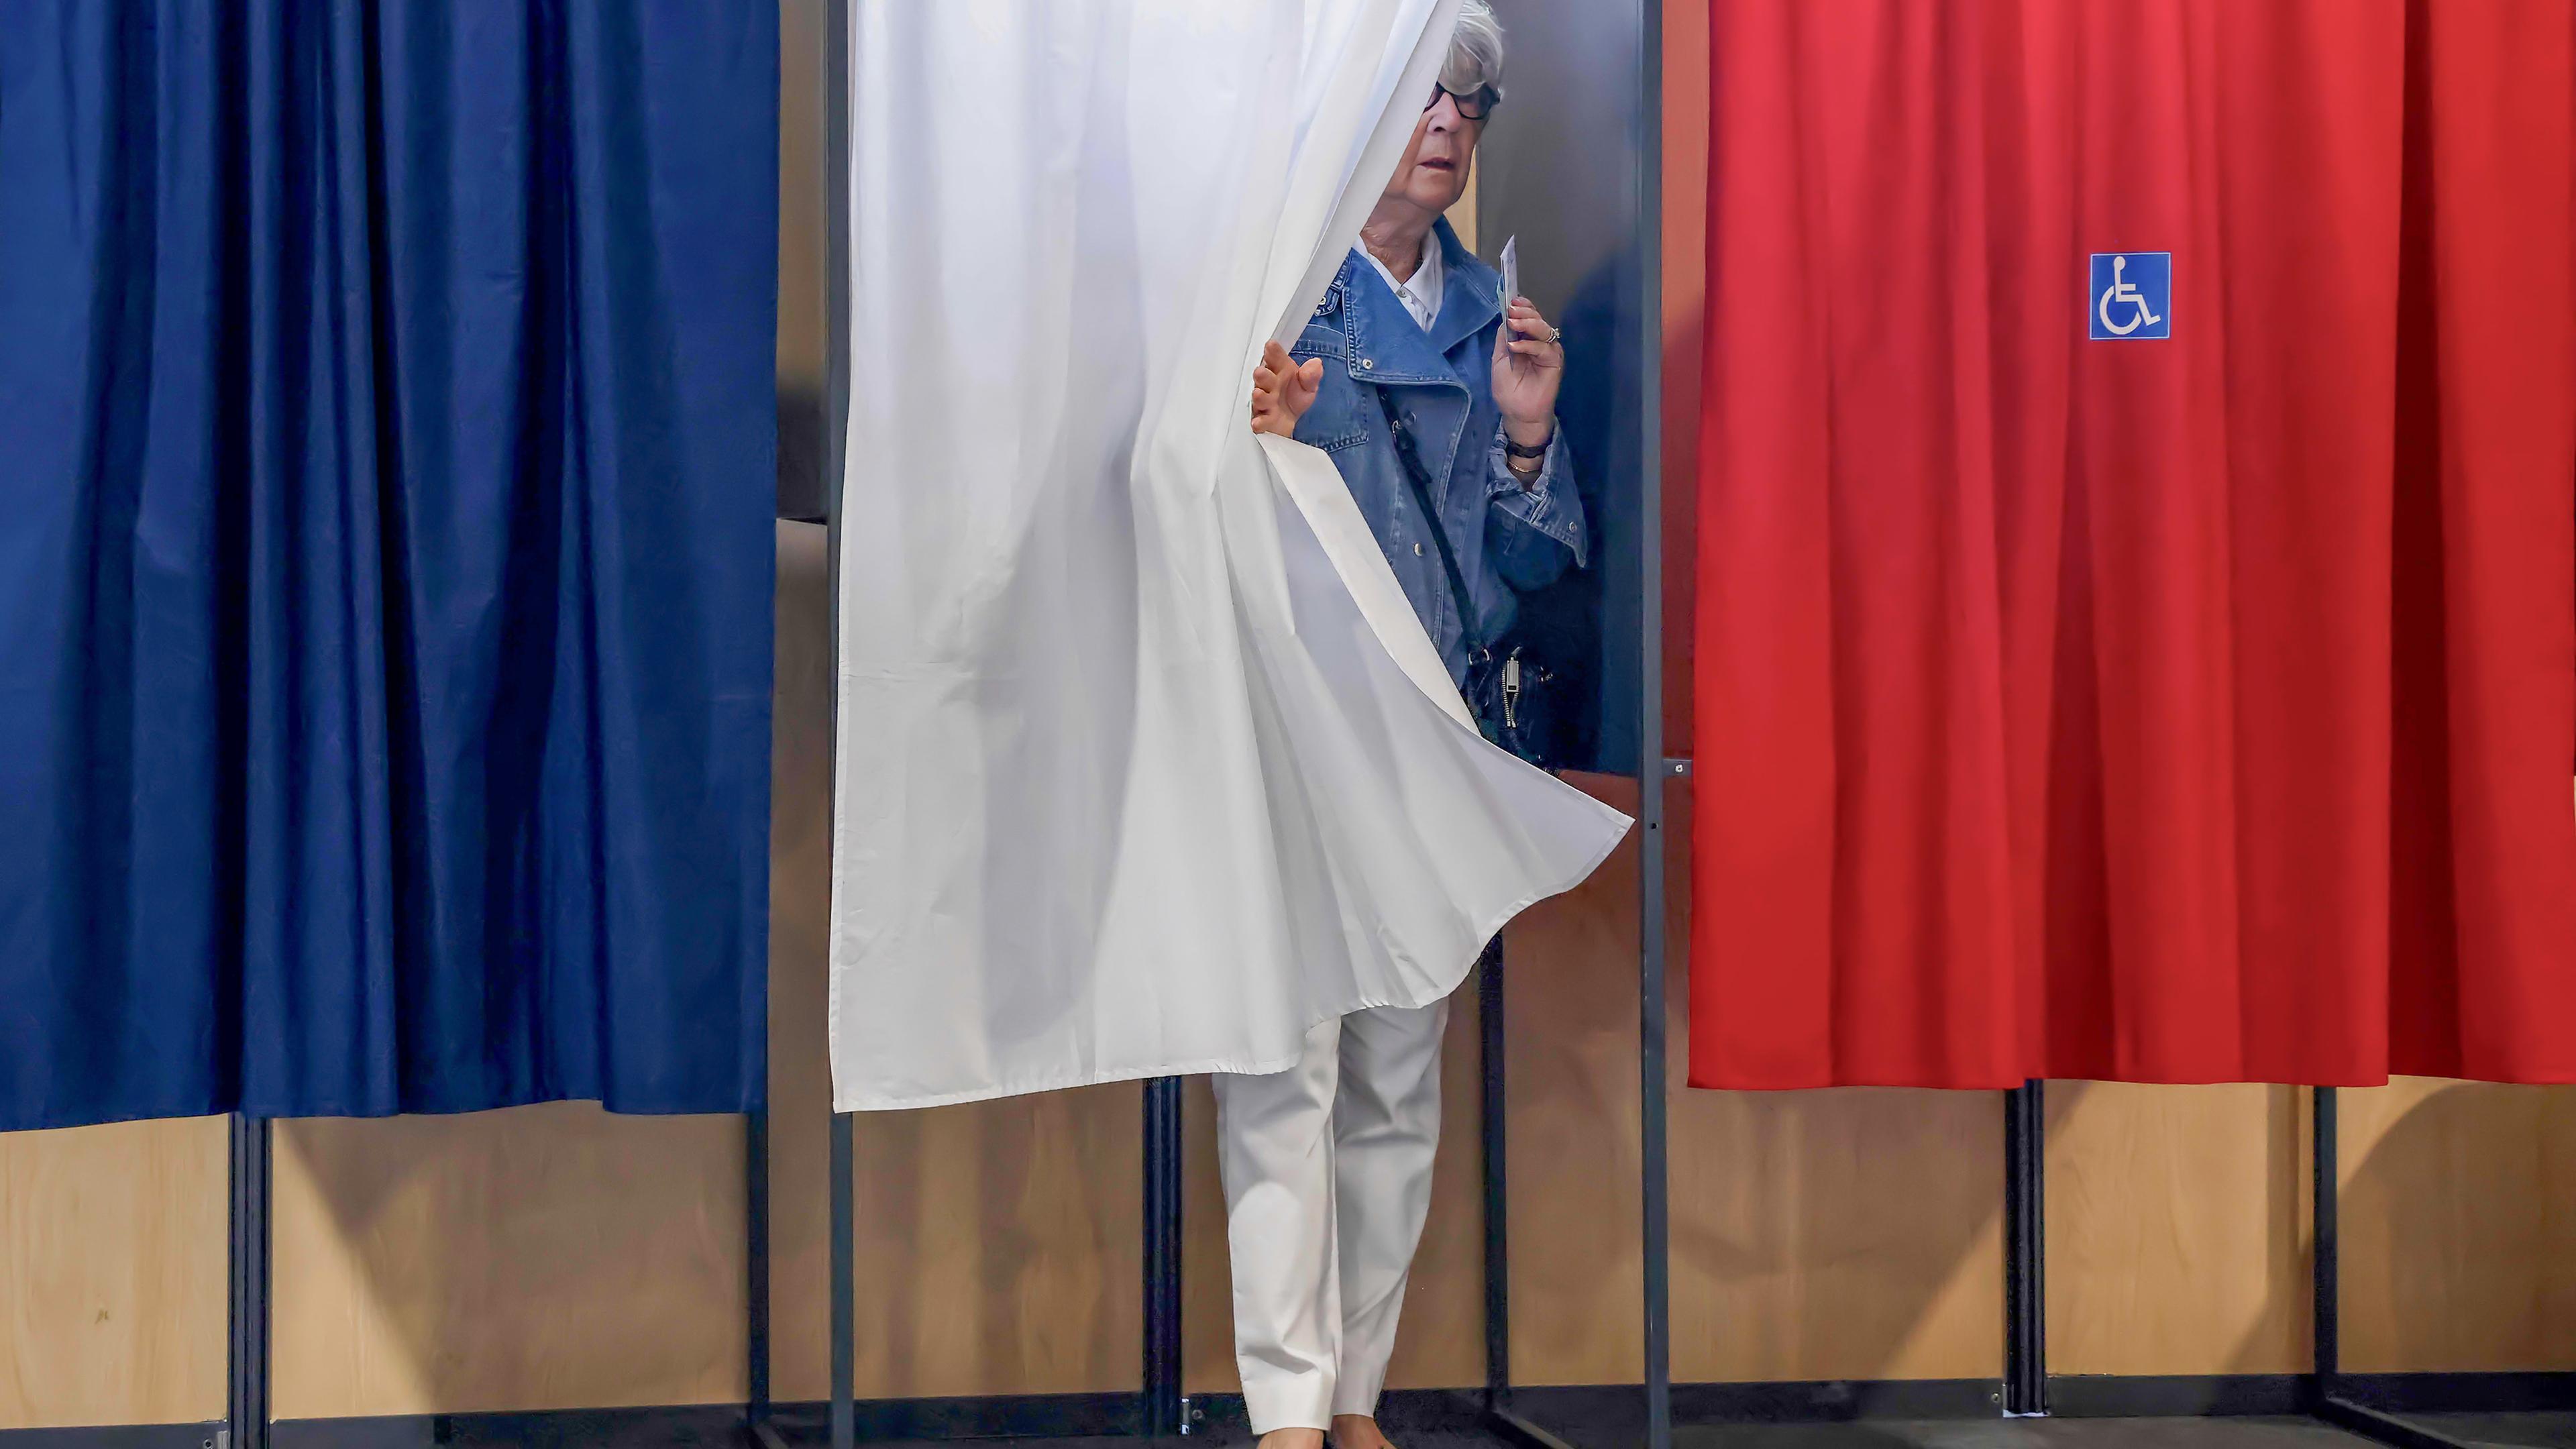 Drei Wahlkabinen sind mit einem blauen, weißen und roten Vorhang verhängt. Hinter dem mittleren weißen Vorhang tritt eine Frau mit einem Zettel in der Hand hervor.